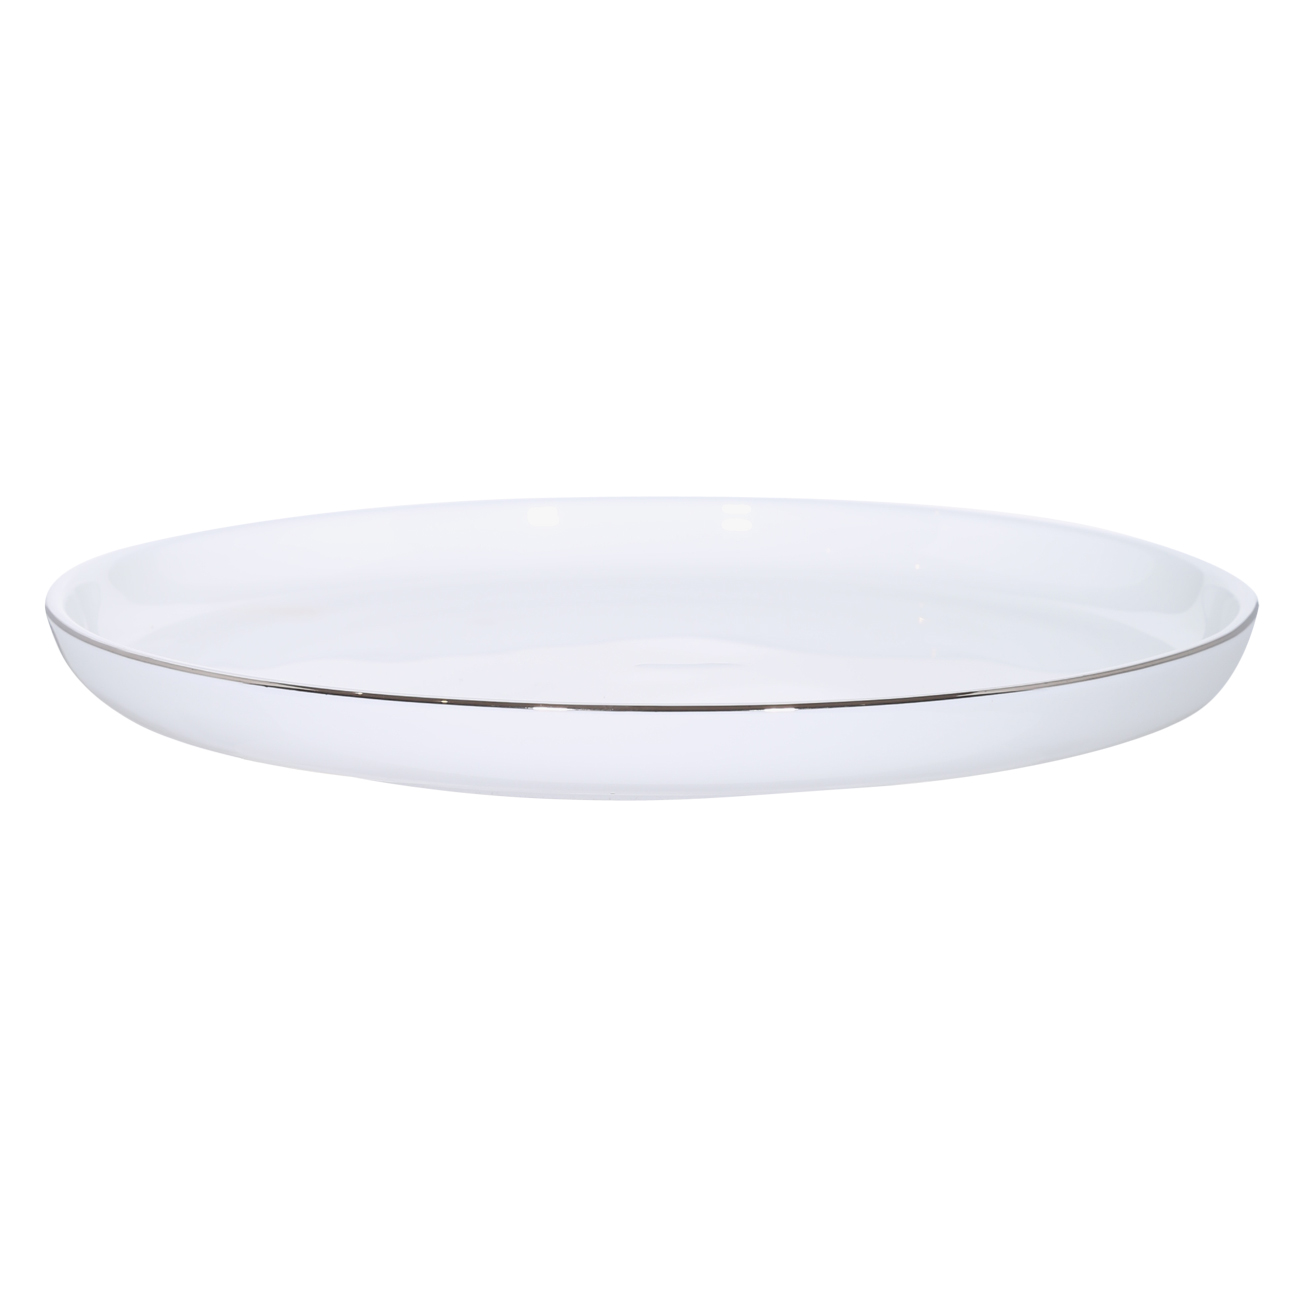 Dessert plate, 20 cm, 2 pcs, porcelain F, white, Ideal silver изображение № 3